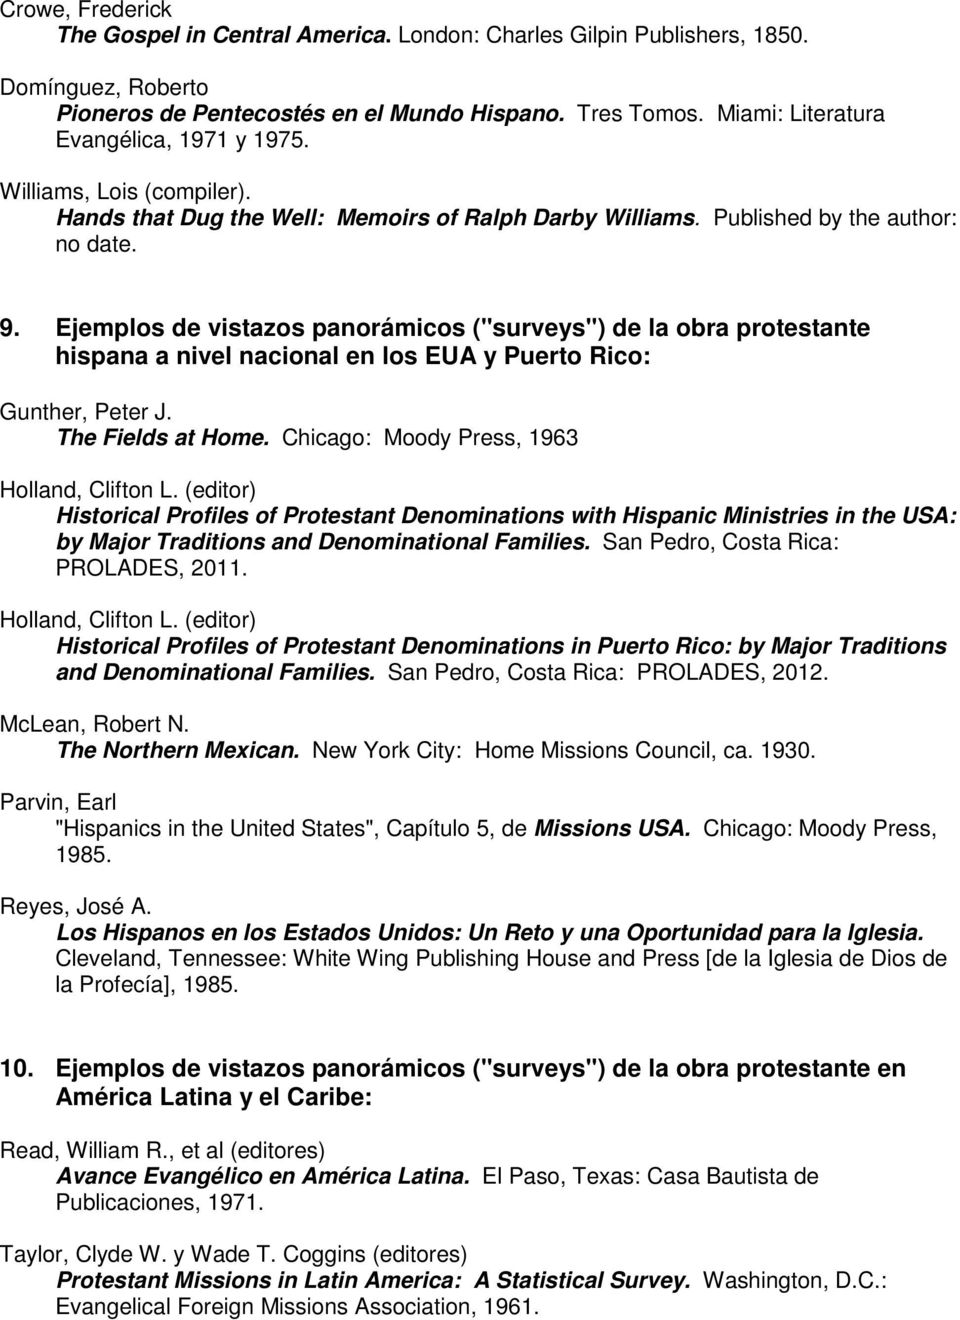 Ejemplos de vistazos panorámicos ("surveys") de la obra protestante hispana a nivel nacional en los EUA y Puerto Rico: Gunther, Peter J. The Fields at Home.